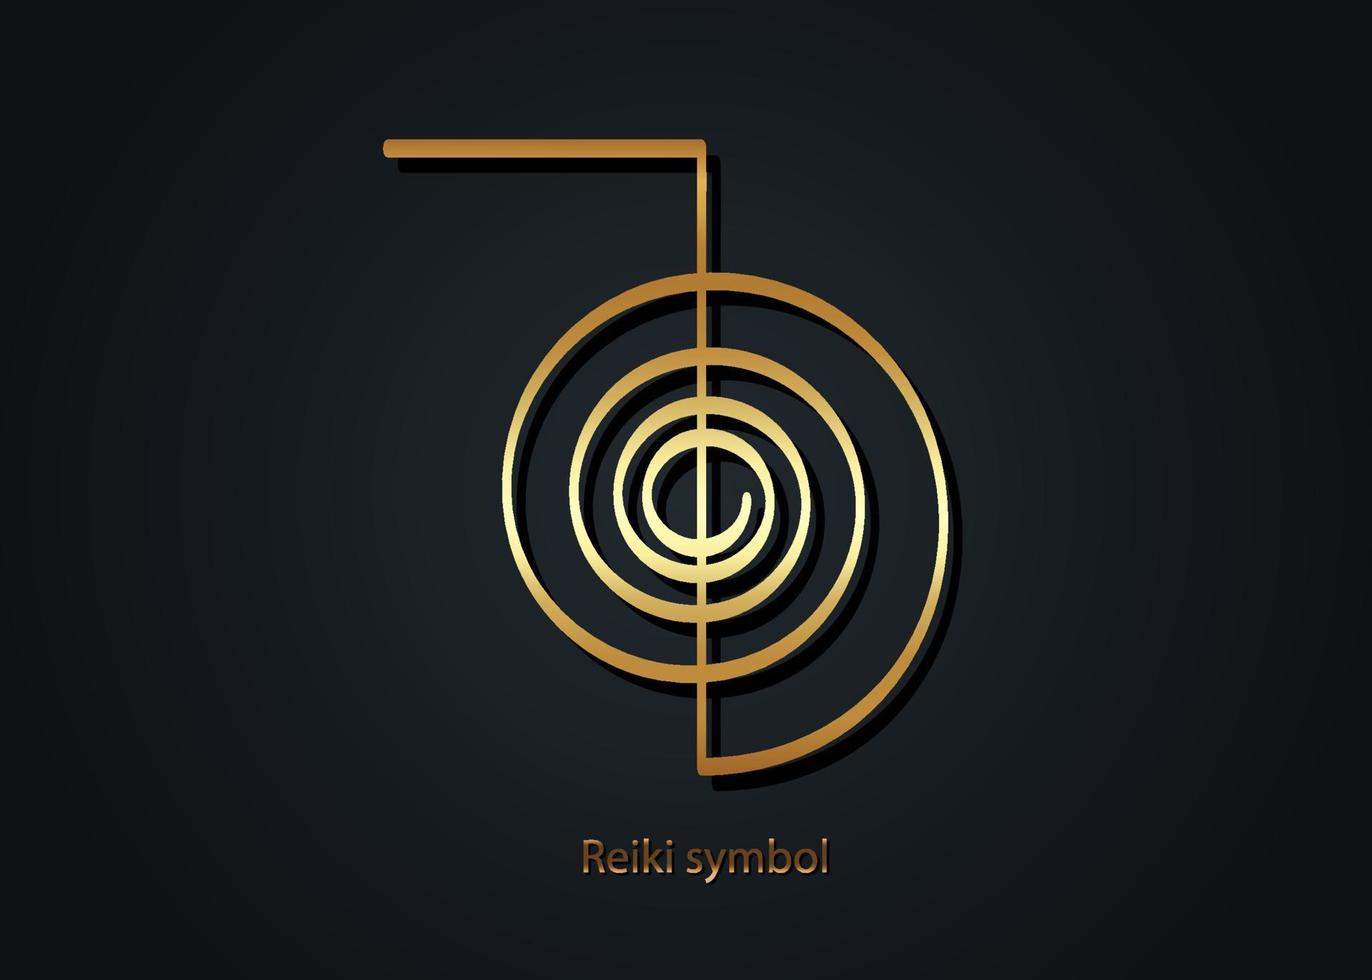 reiki símbolo infografía icono del logotipo de oro, un signo sagrado. energía espiritual. medicina alternativa. Espiral mística esotérica, vector de tatuaje aislado sobre fondo negro